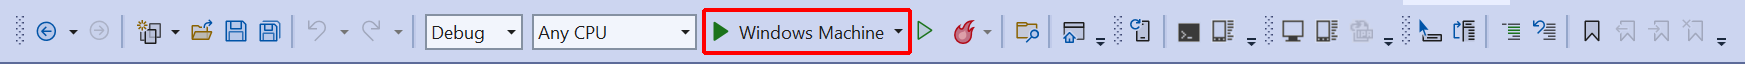 Windows Machine button.